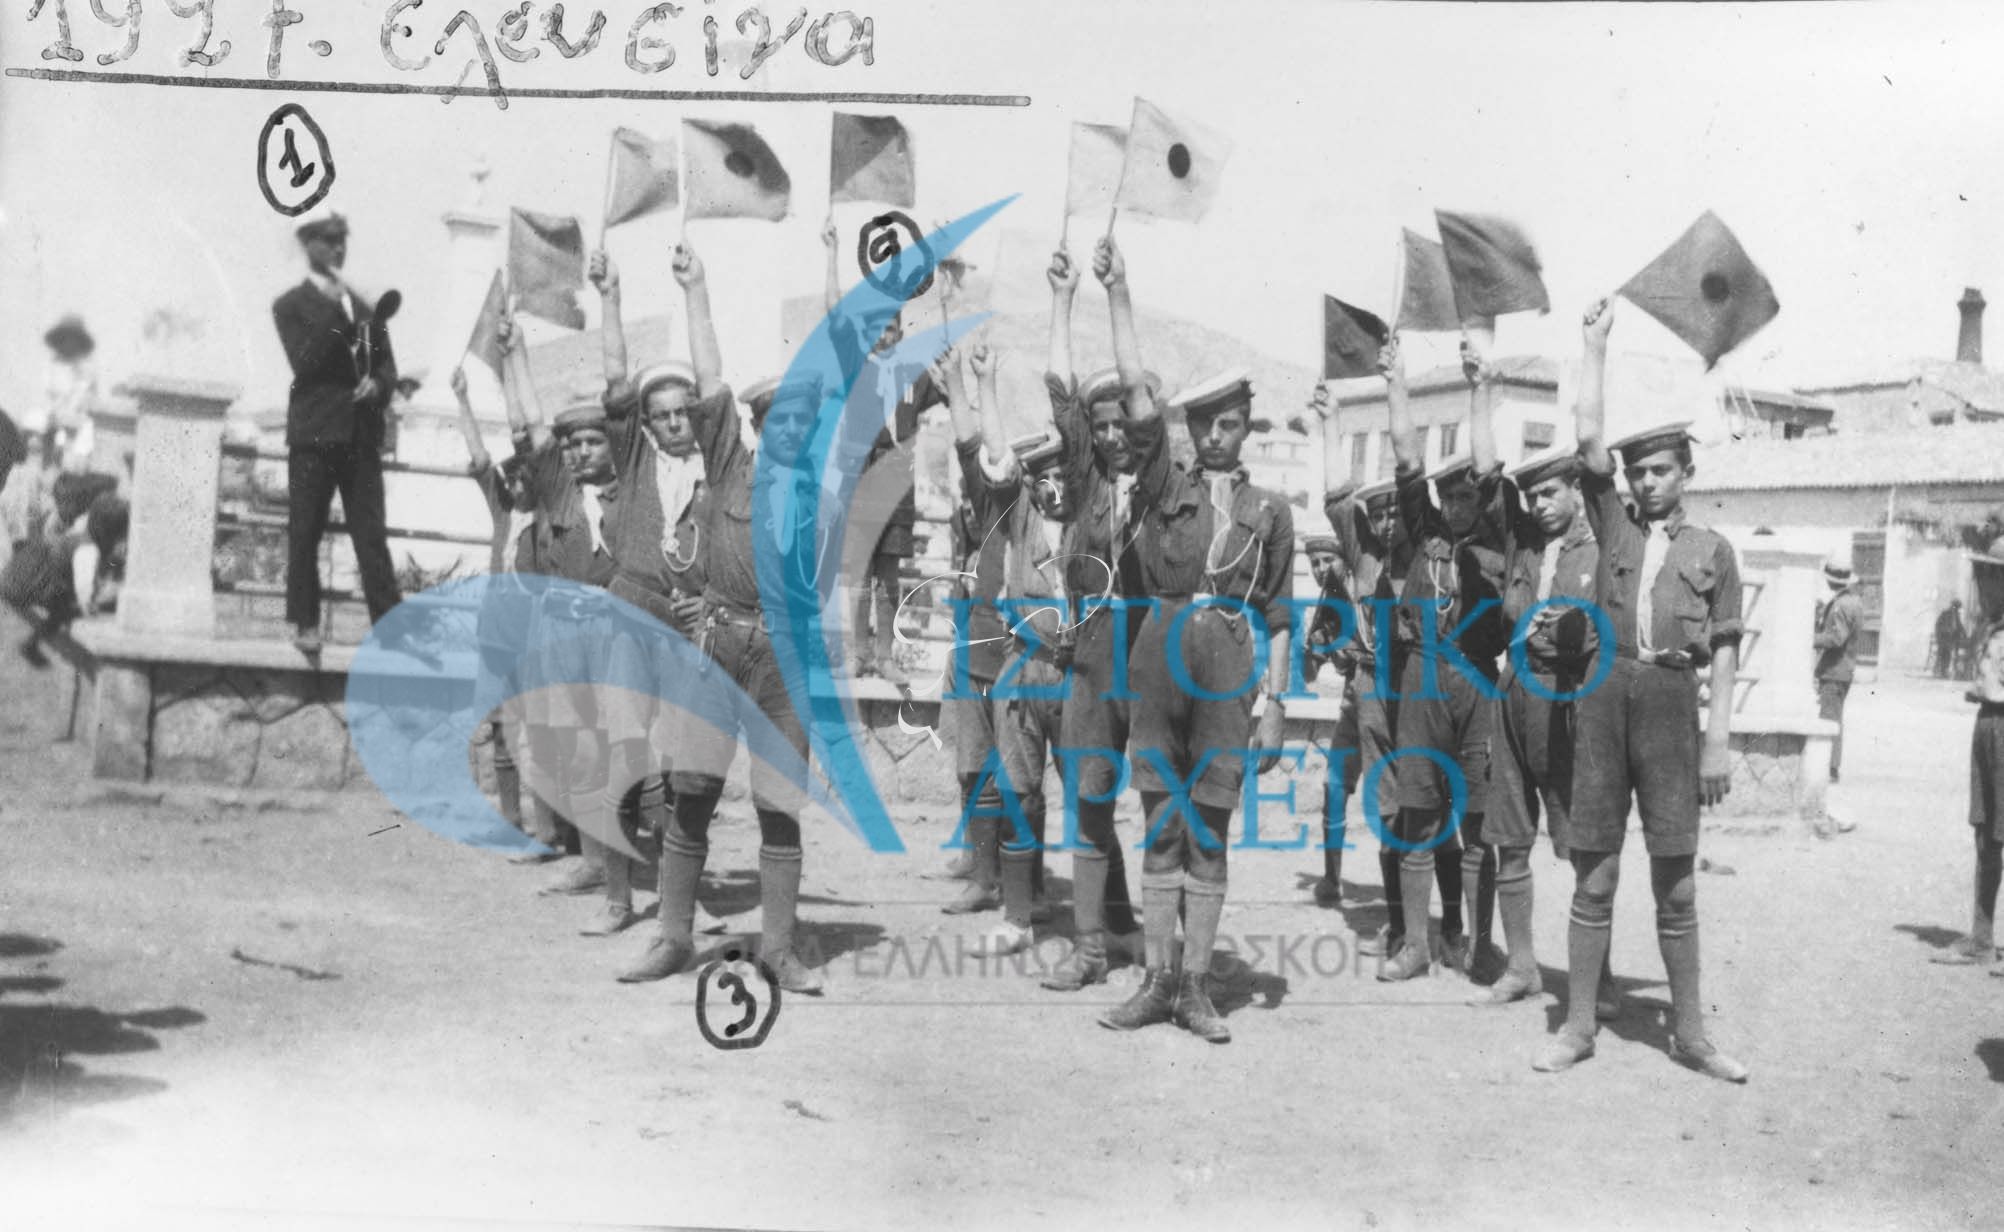 Πρόσκοποι Νίκαιας σε ασκήσεις δια βραχιόνιας επικοινωνίας με το Σύστημα Μορς στην Κεντρική Πλατεία Ελευσίνα κατά τη διάρκεια εκδρομής το 1927. Διακρίνονται: 1. Μανώλης Βελισσάριος,2. Σ Τερκεσίδης 3.Κ Λουίζος